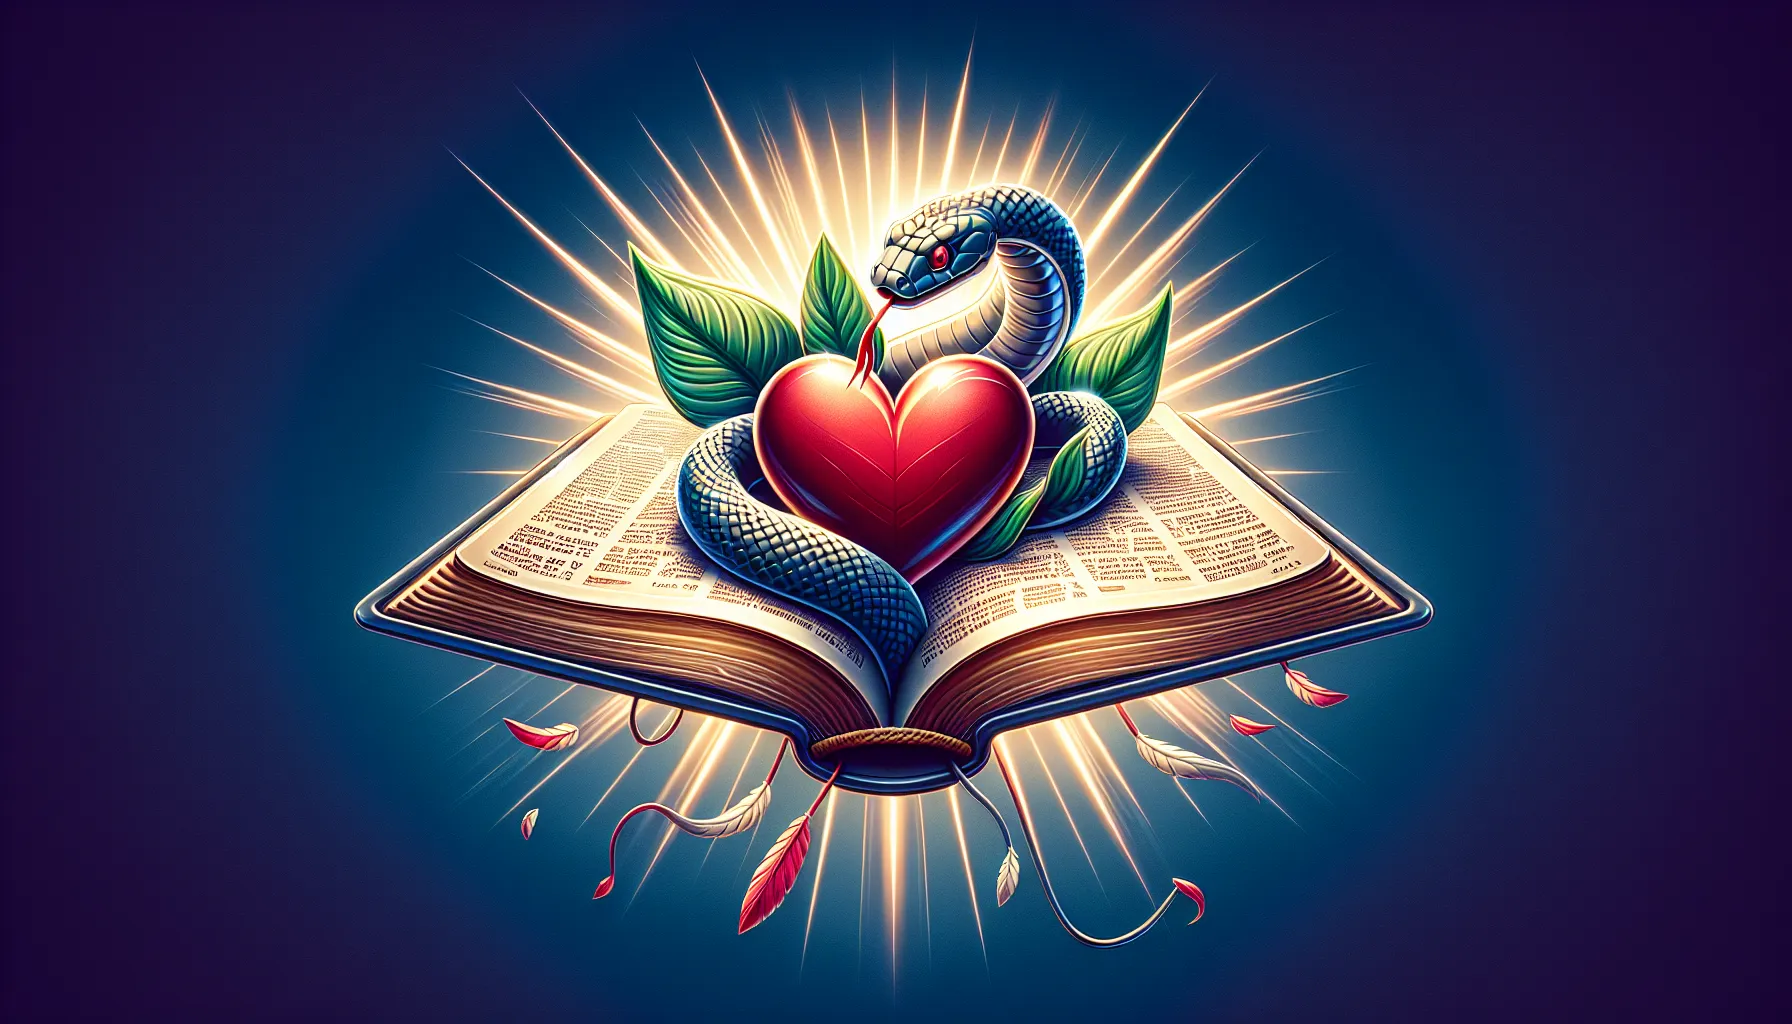 Ilustración de una Biblia abierta con un corazón y una serpiente